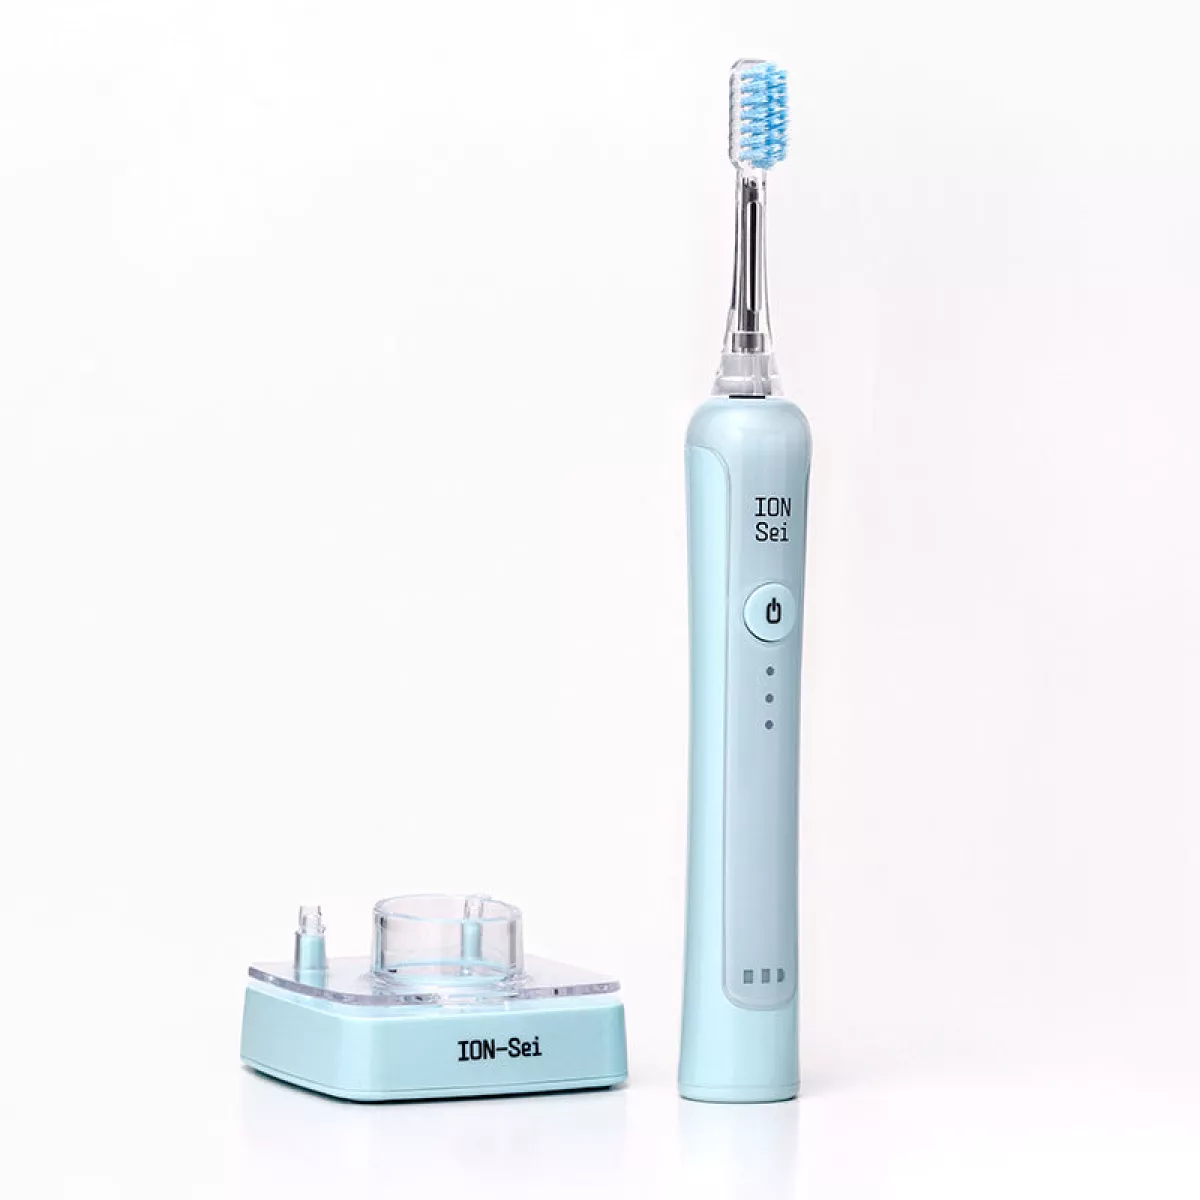 #1 - ION-Sei Sonisk Elektrisk Tandbørste, LakeBlue